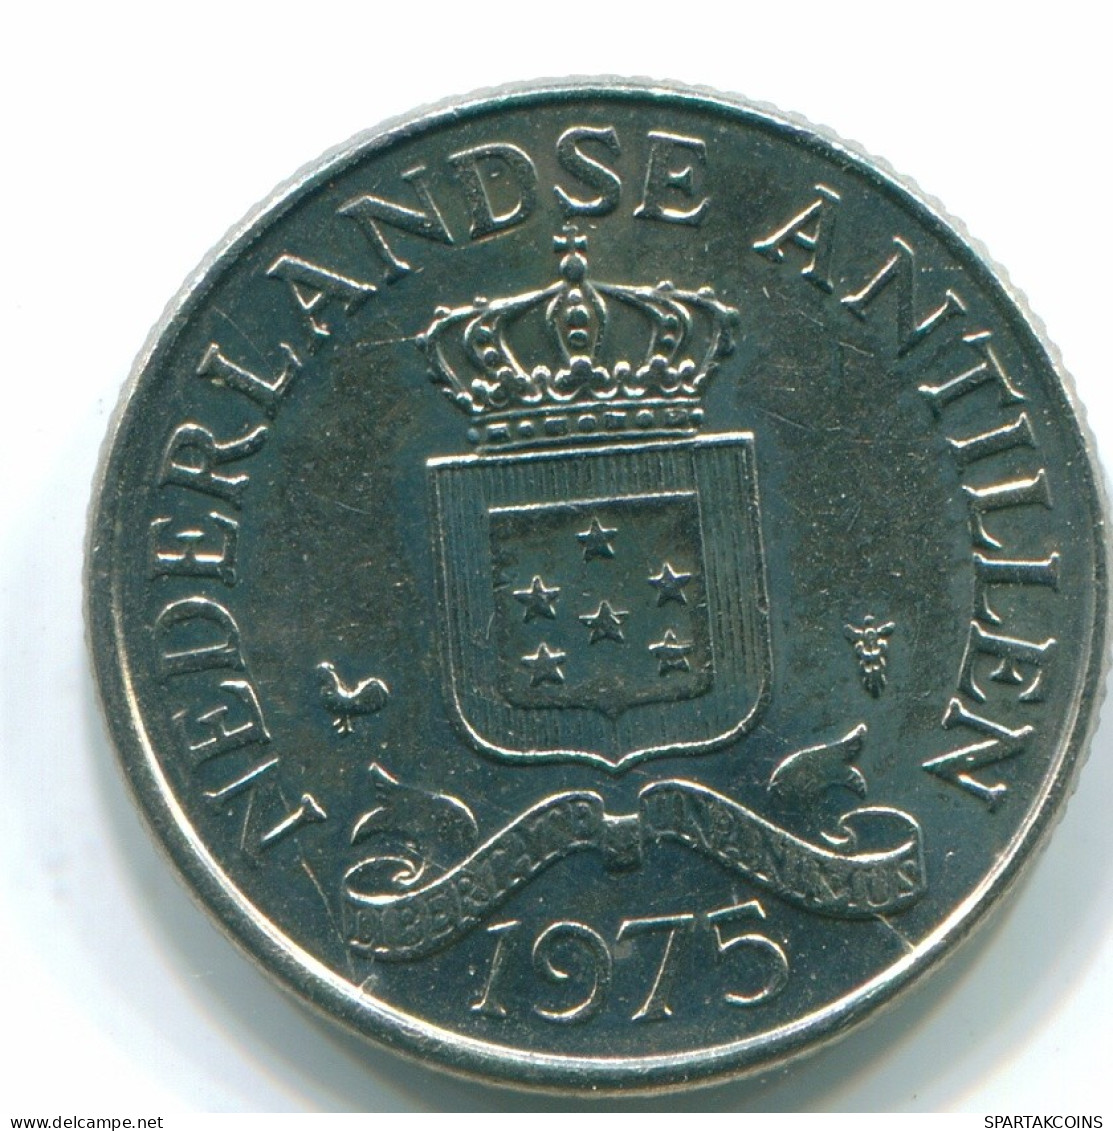 25 CENTS 1975 NIEDERLÄNDISCHE ANTILLEN Nickel Koloniale Münze #S11610.D.A - Niederländische Antillen